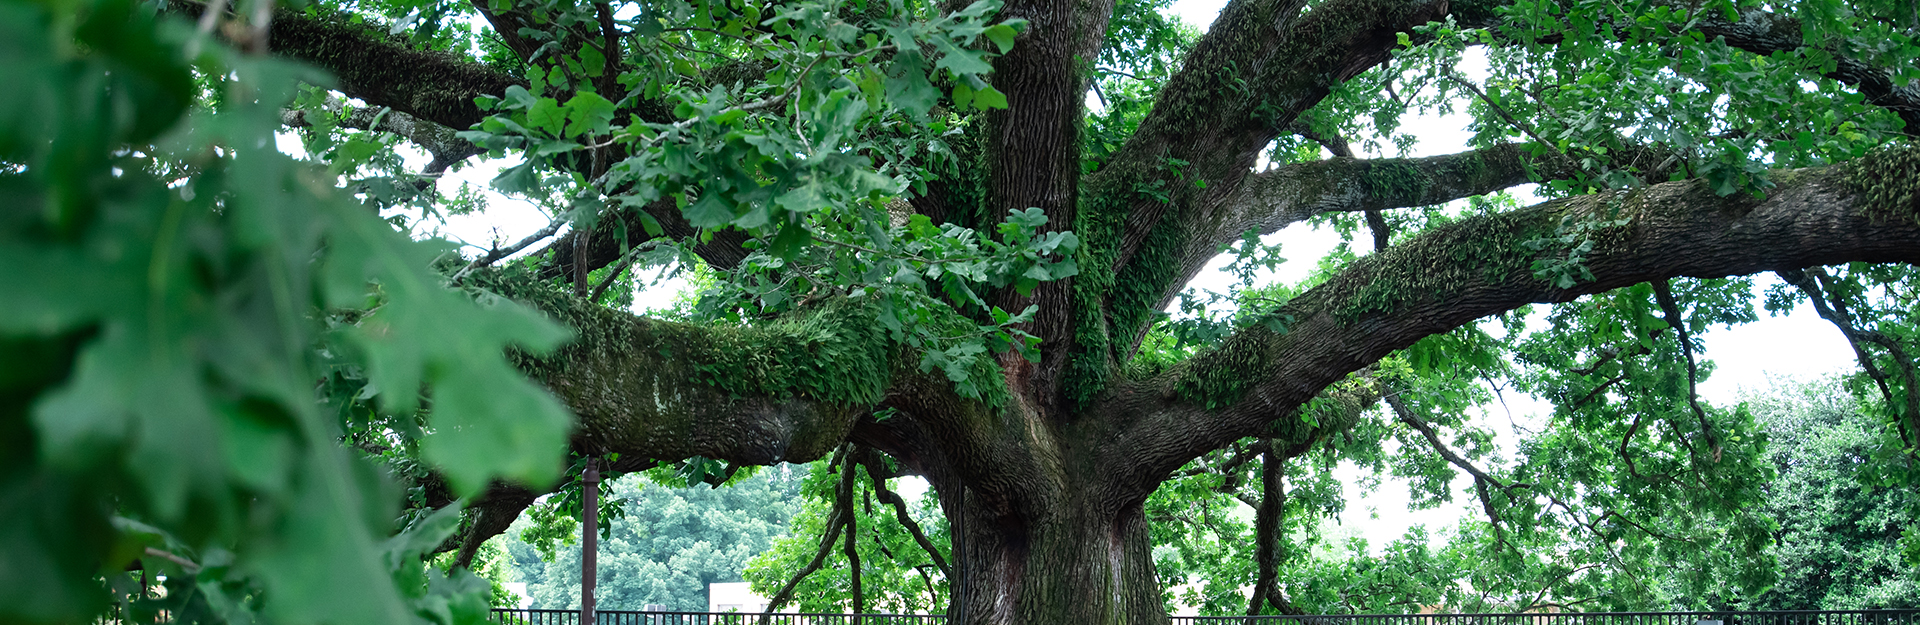 beautiful centennial oak on clemson university campus